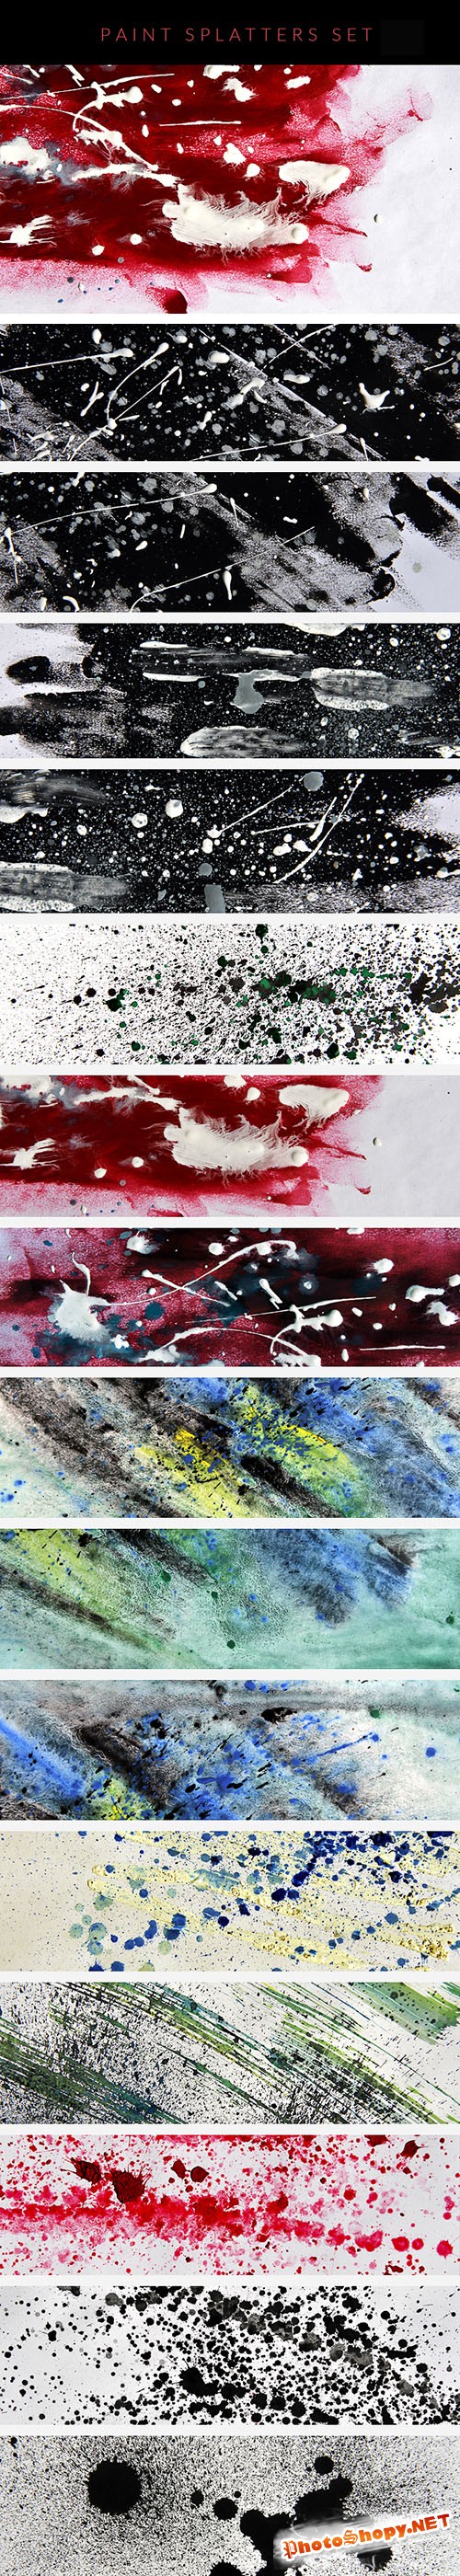 Paint Splatters Textures Set 1